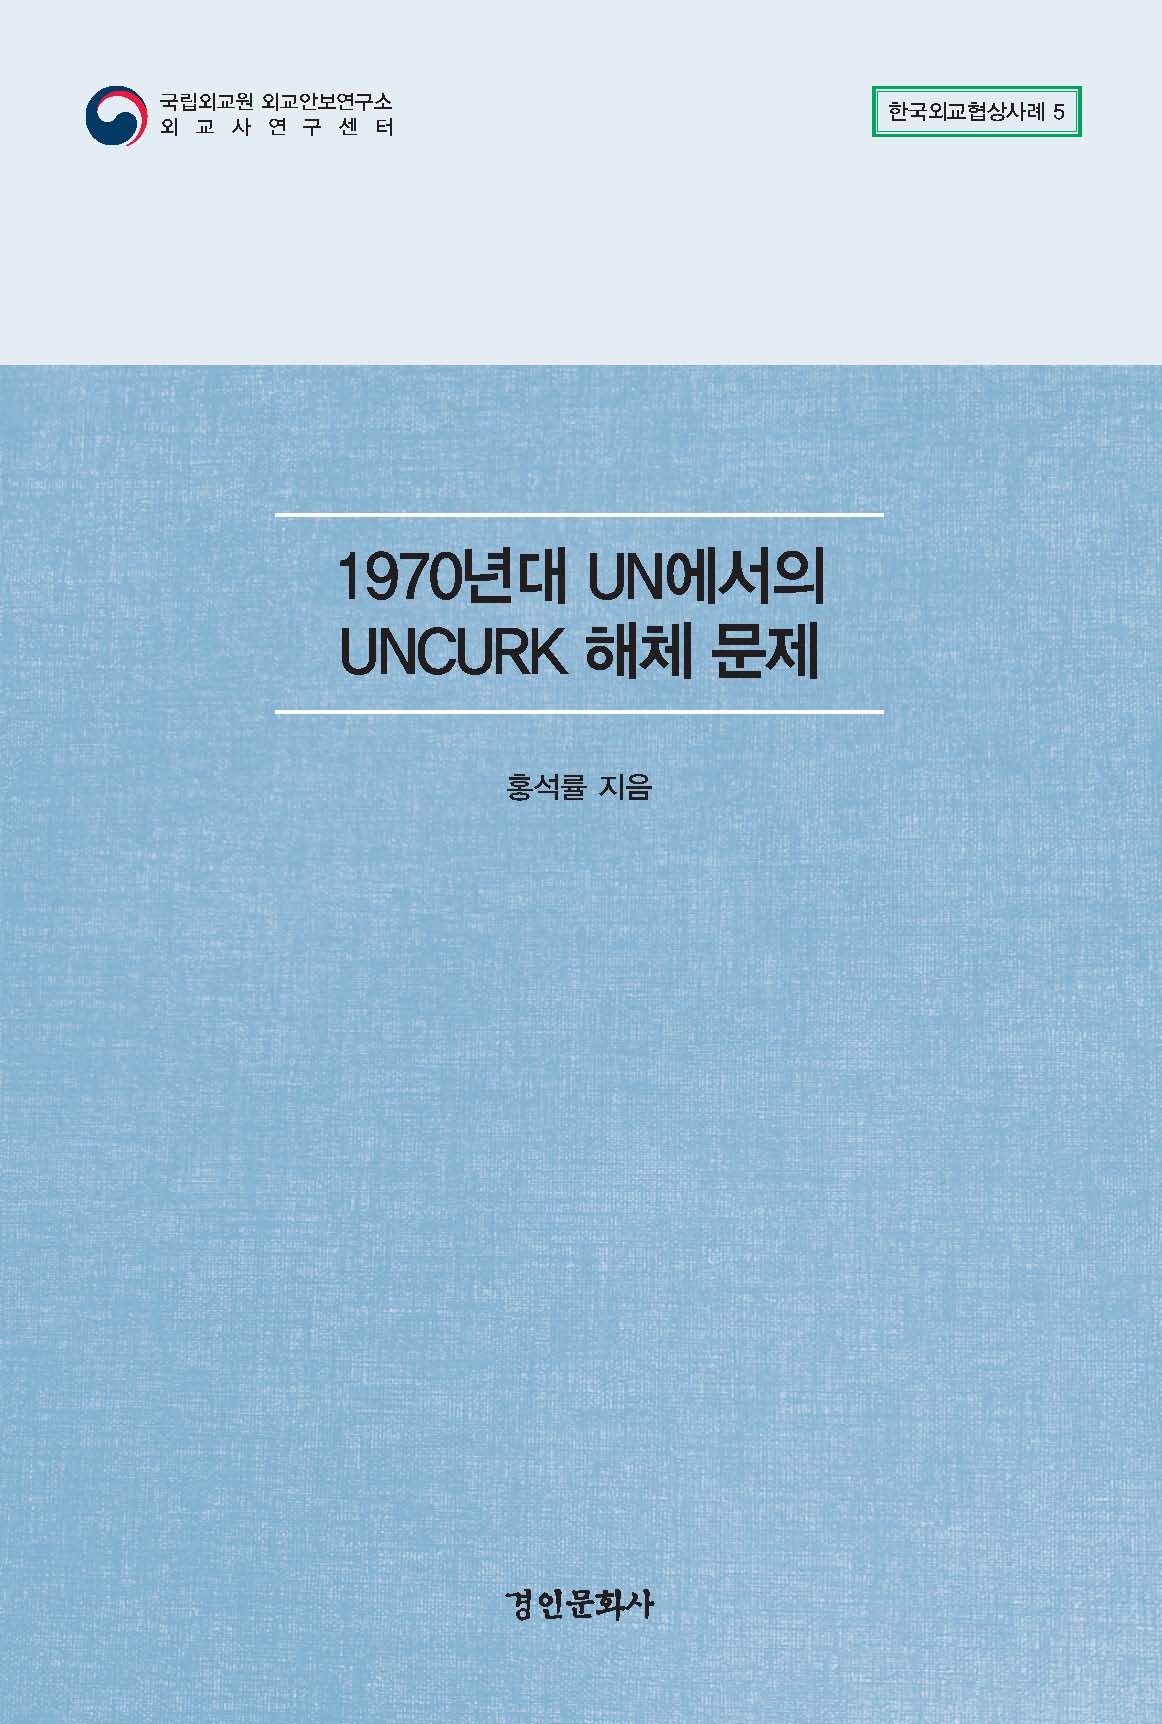 한국외교협상사례 총서 5권 『1970년대 UN에서의 UNCURK 해체 문제』